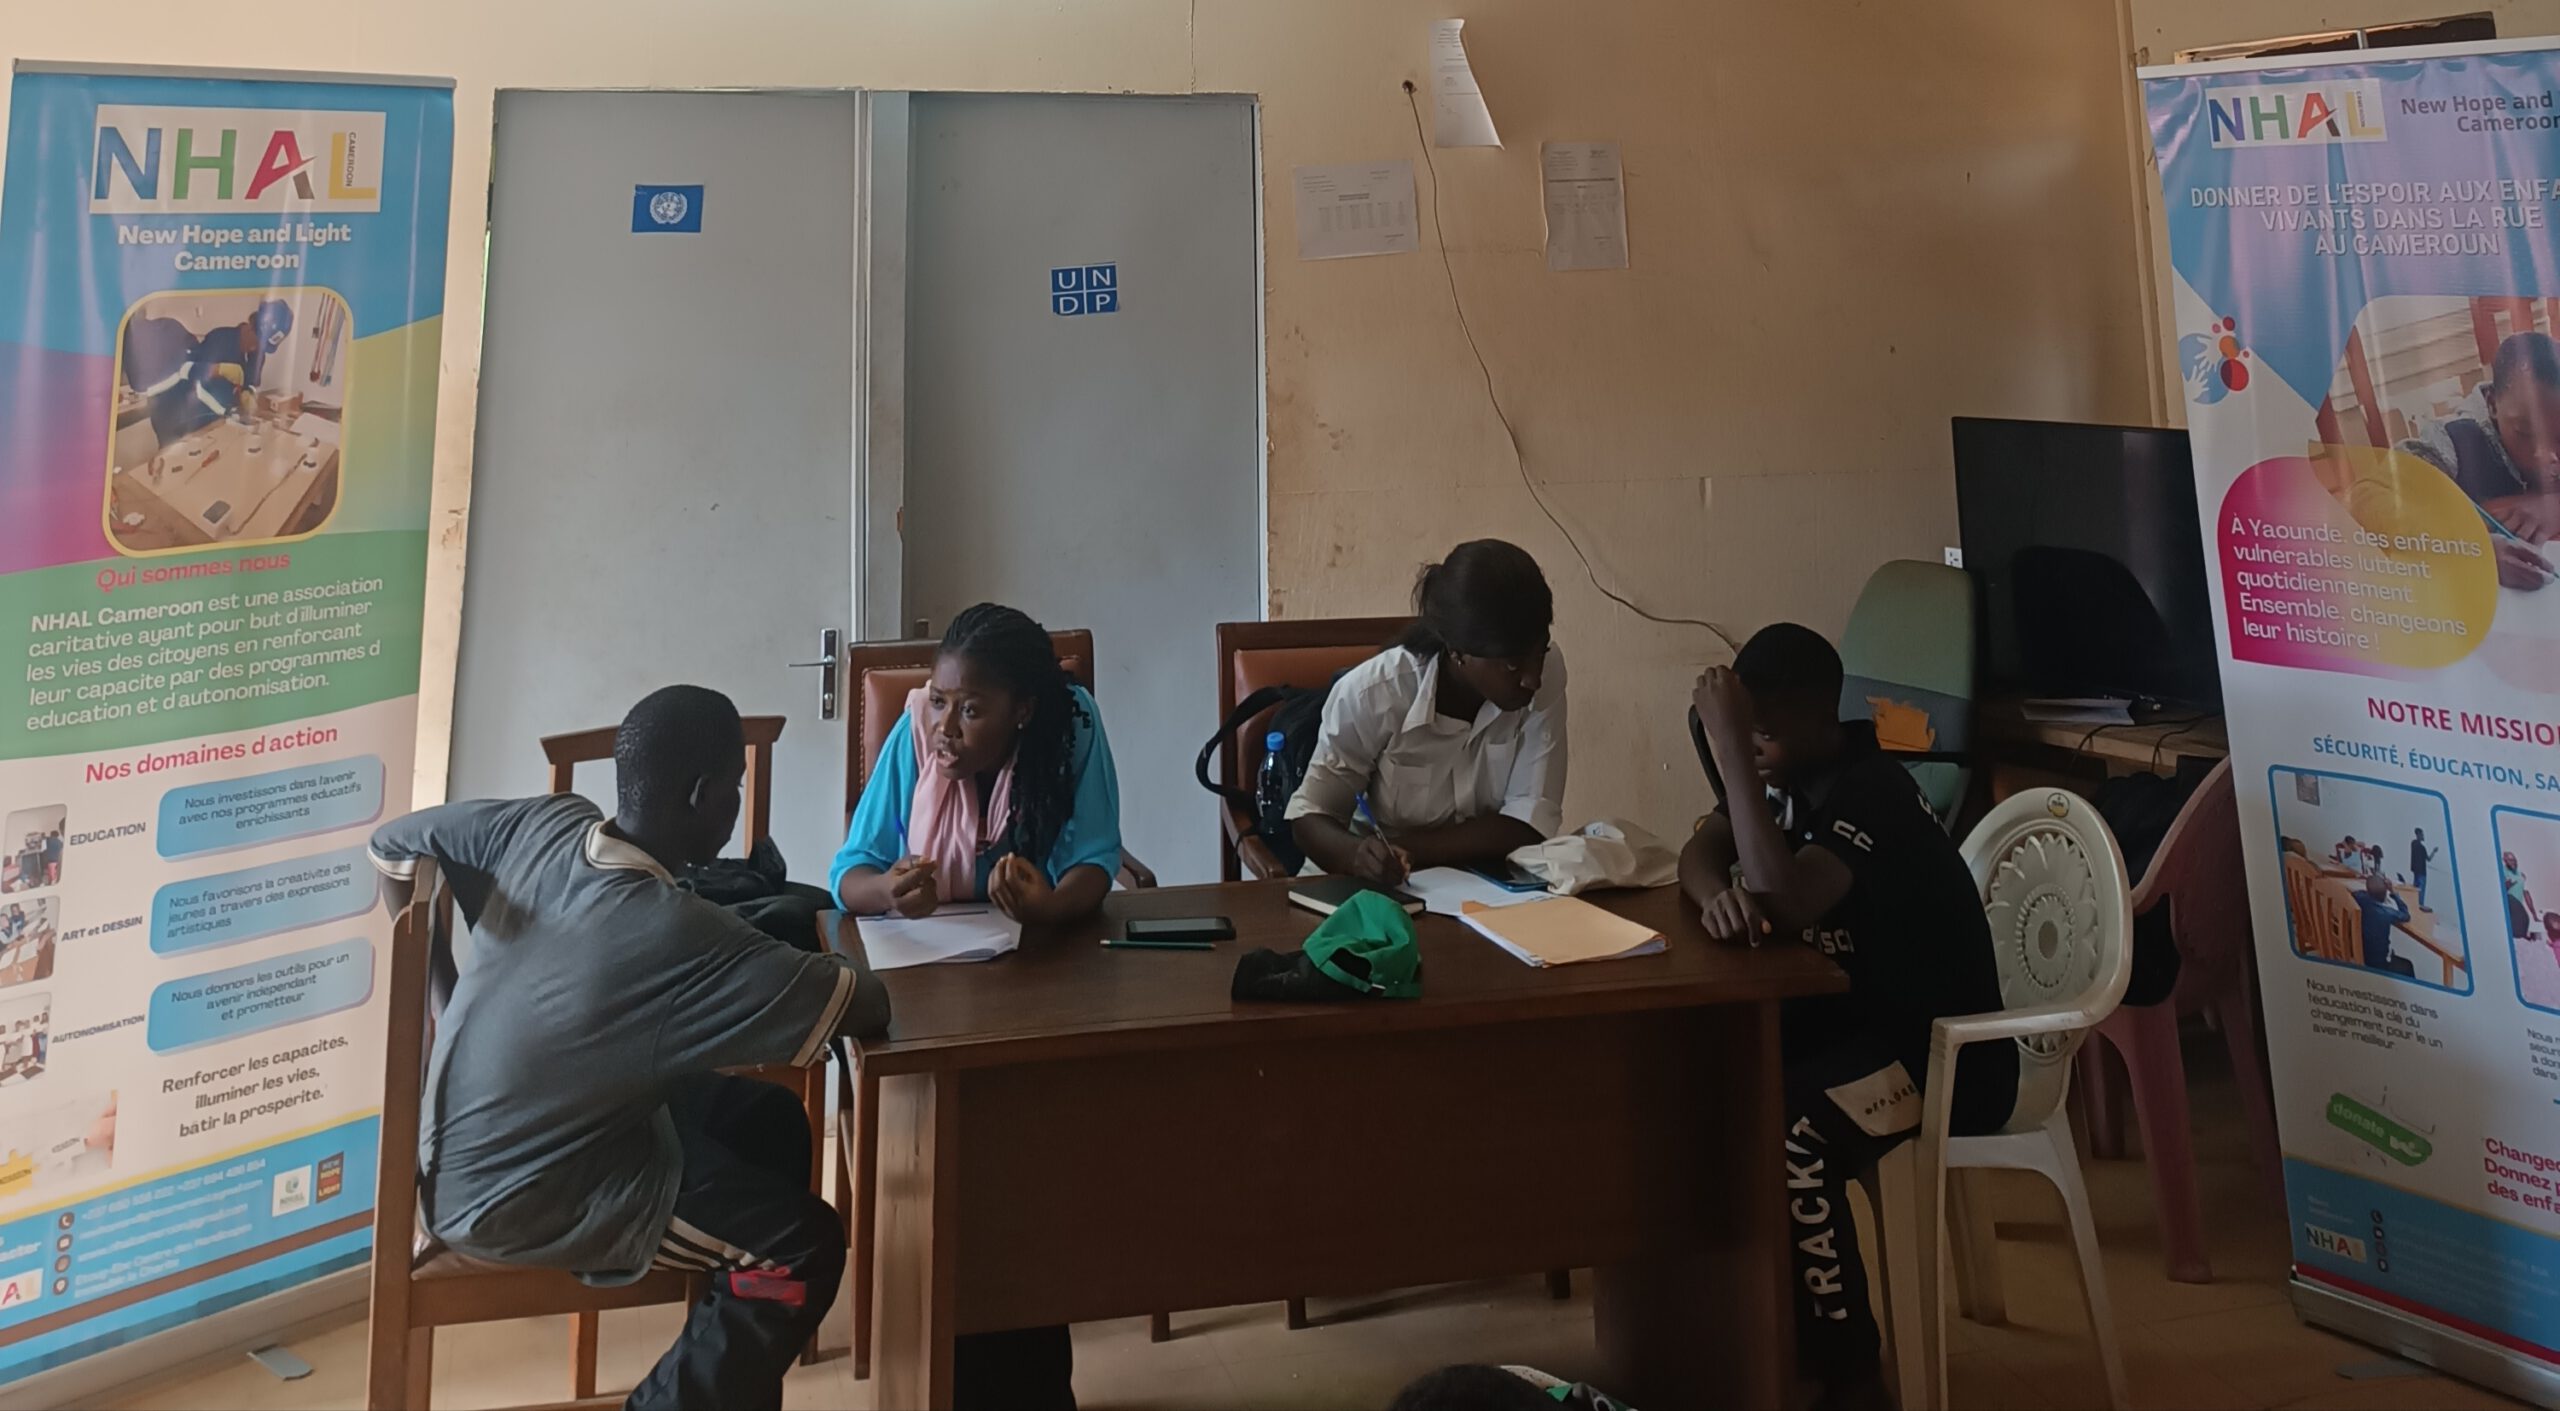 Teamarbeit in Aktion: Unsere Sozialarbeiter, Pädagogen, Psychologen und Künstler arbeiten gemeinsam daran, straßenlebenden Kindern in Kamerun Liebe, Bildung und Unterstützung zu schenken."